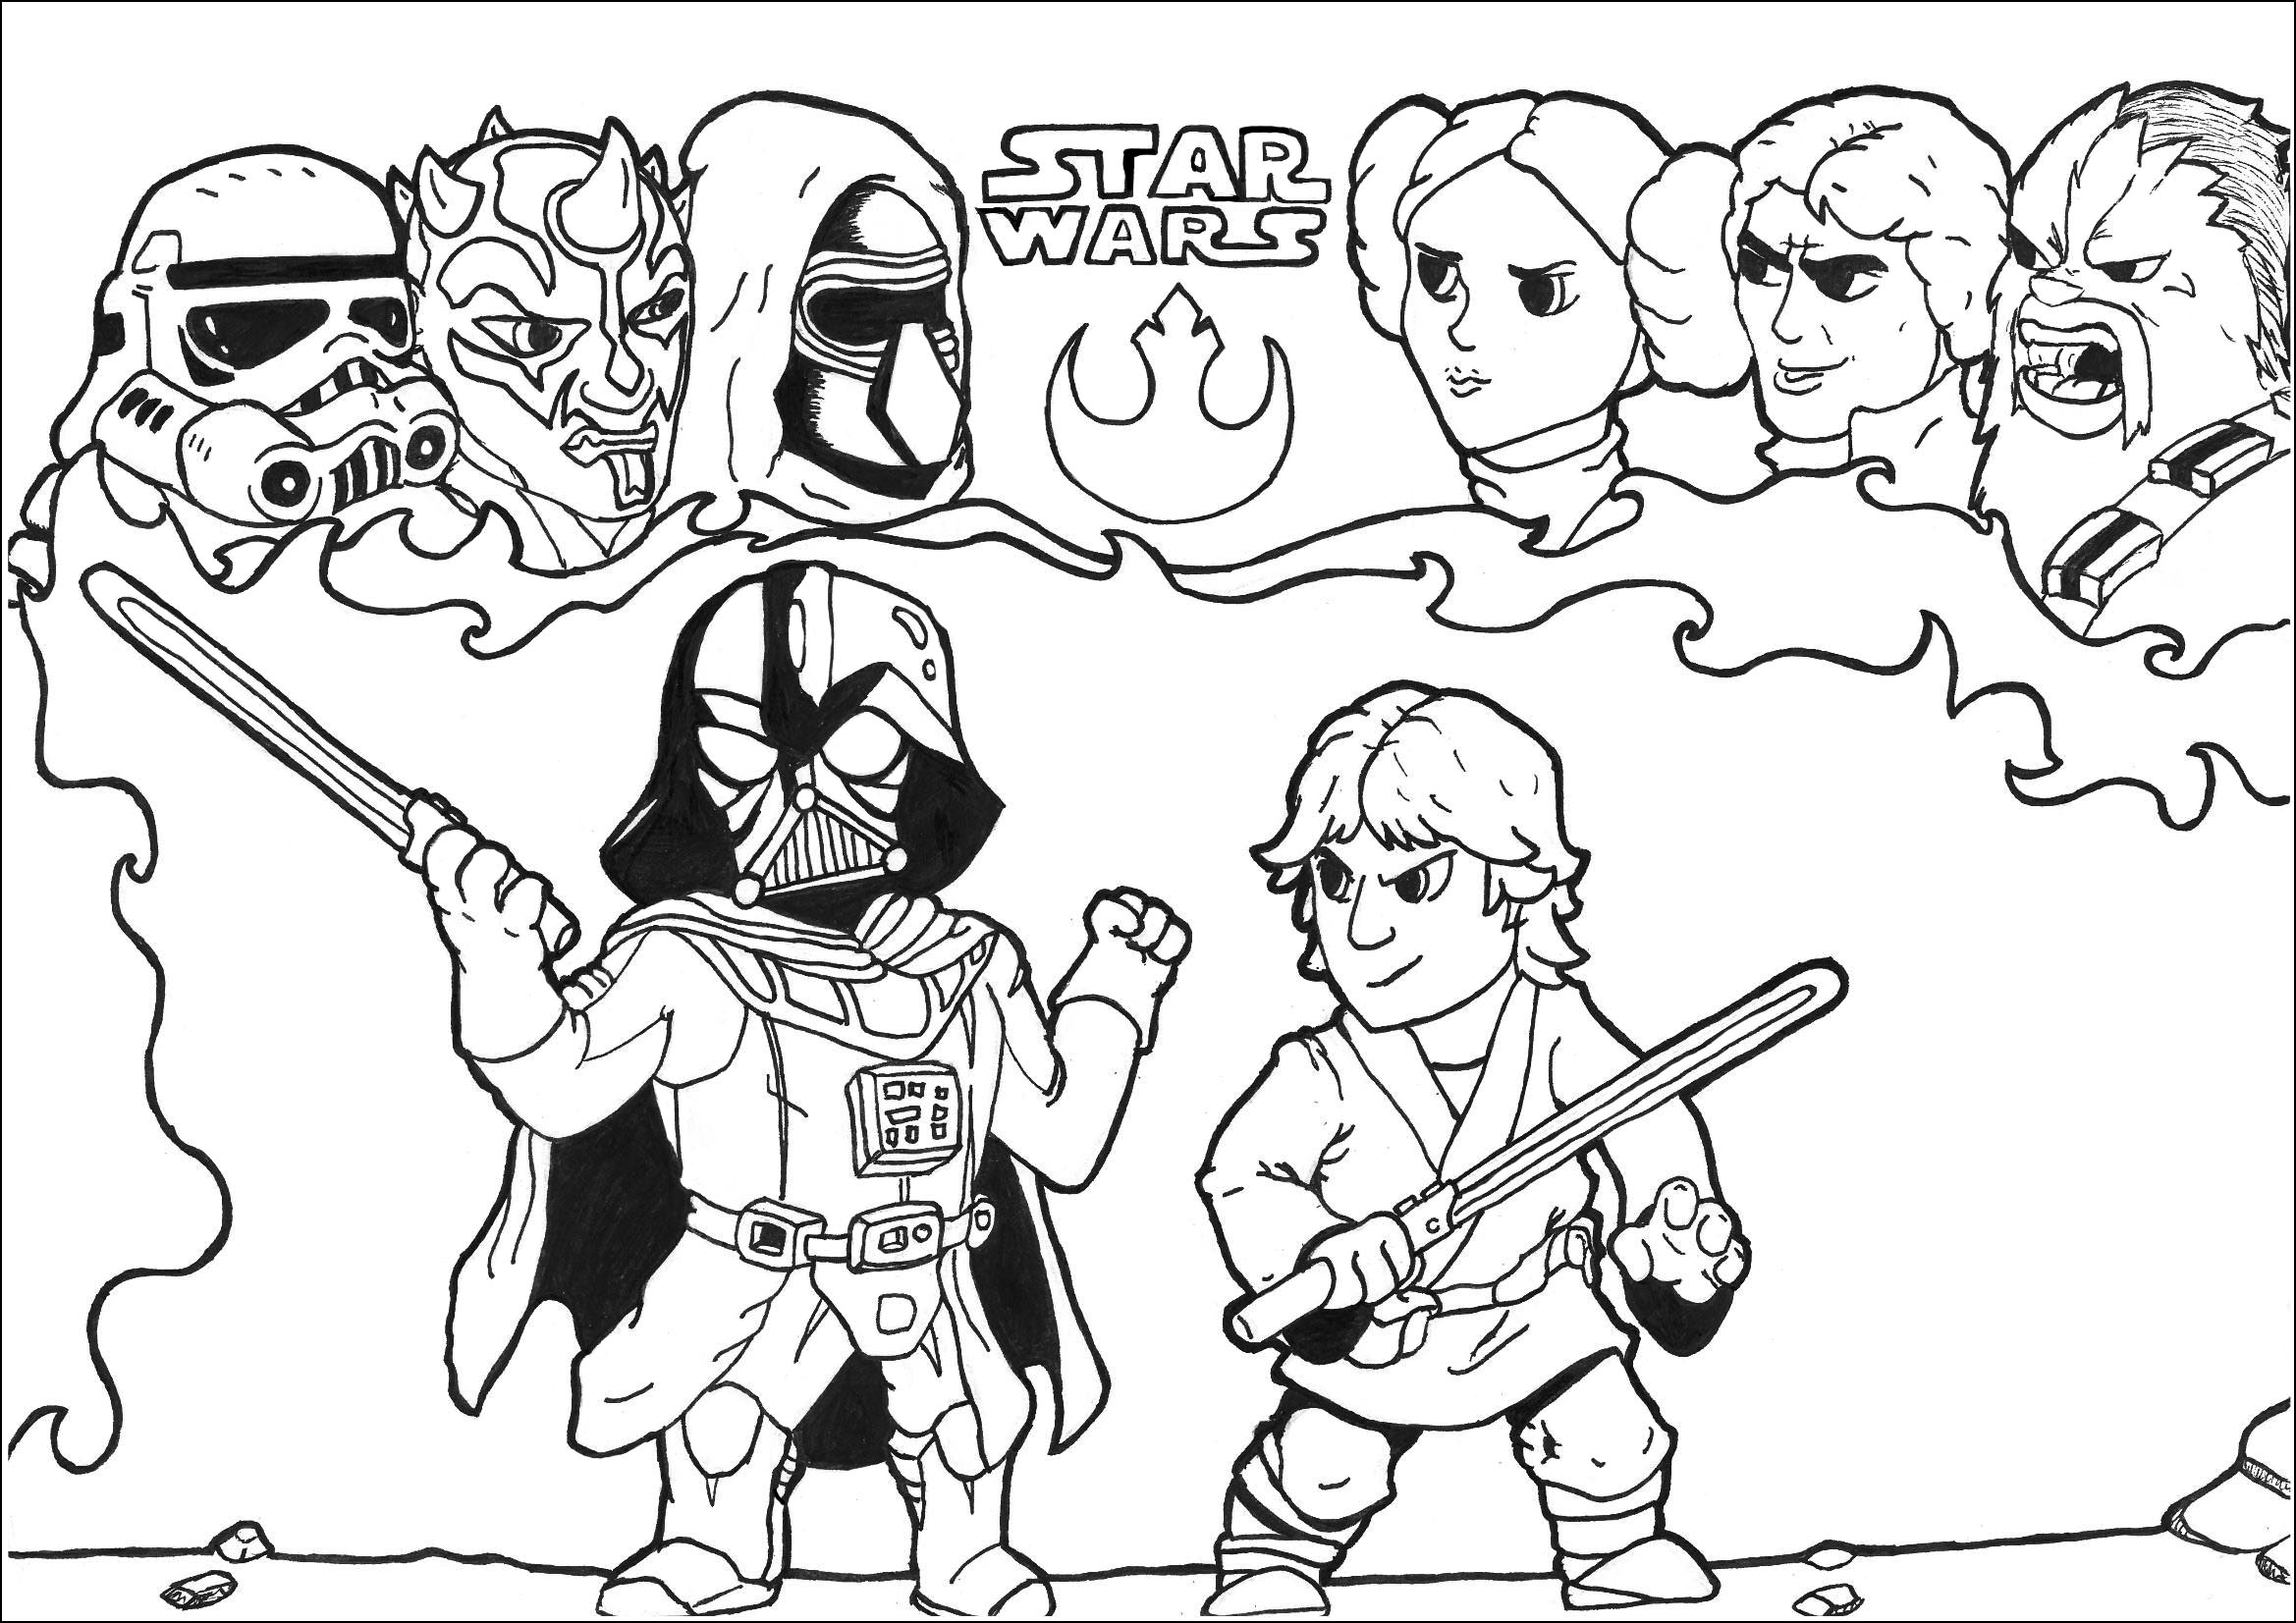 Luke contra Darth Vader e outras personagens da Saga. Um desenho em modo Chibi